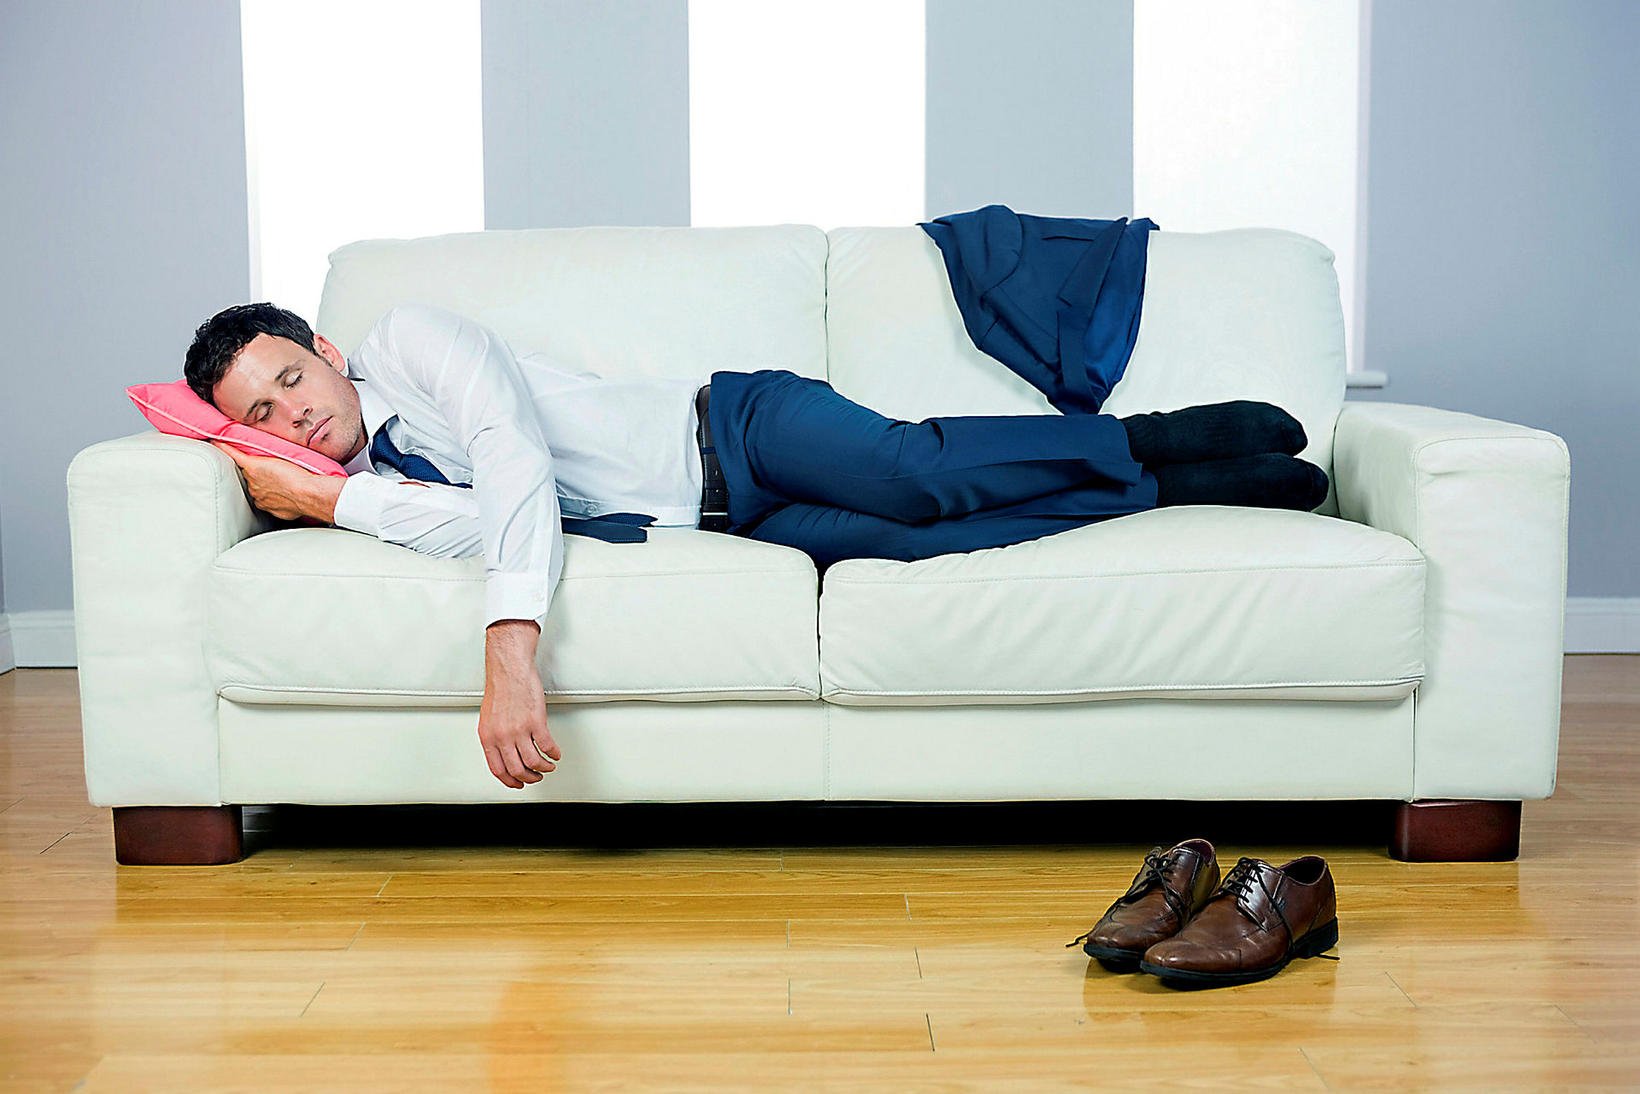 Ничем просто лежу на диване. Человек на диване. Человек лежит на диване. Бизнесмен на диване. Бизнесмен лежит на диване.